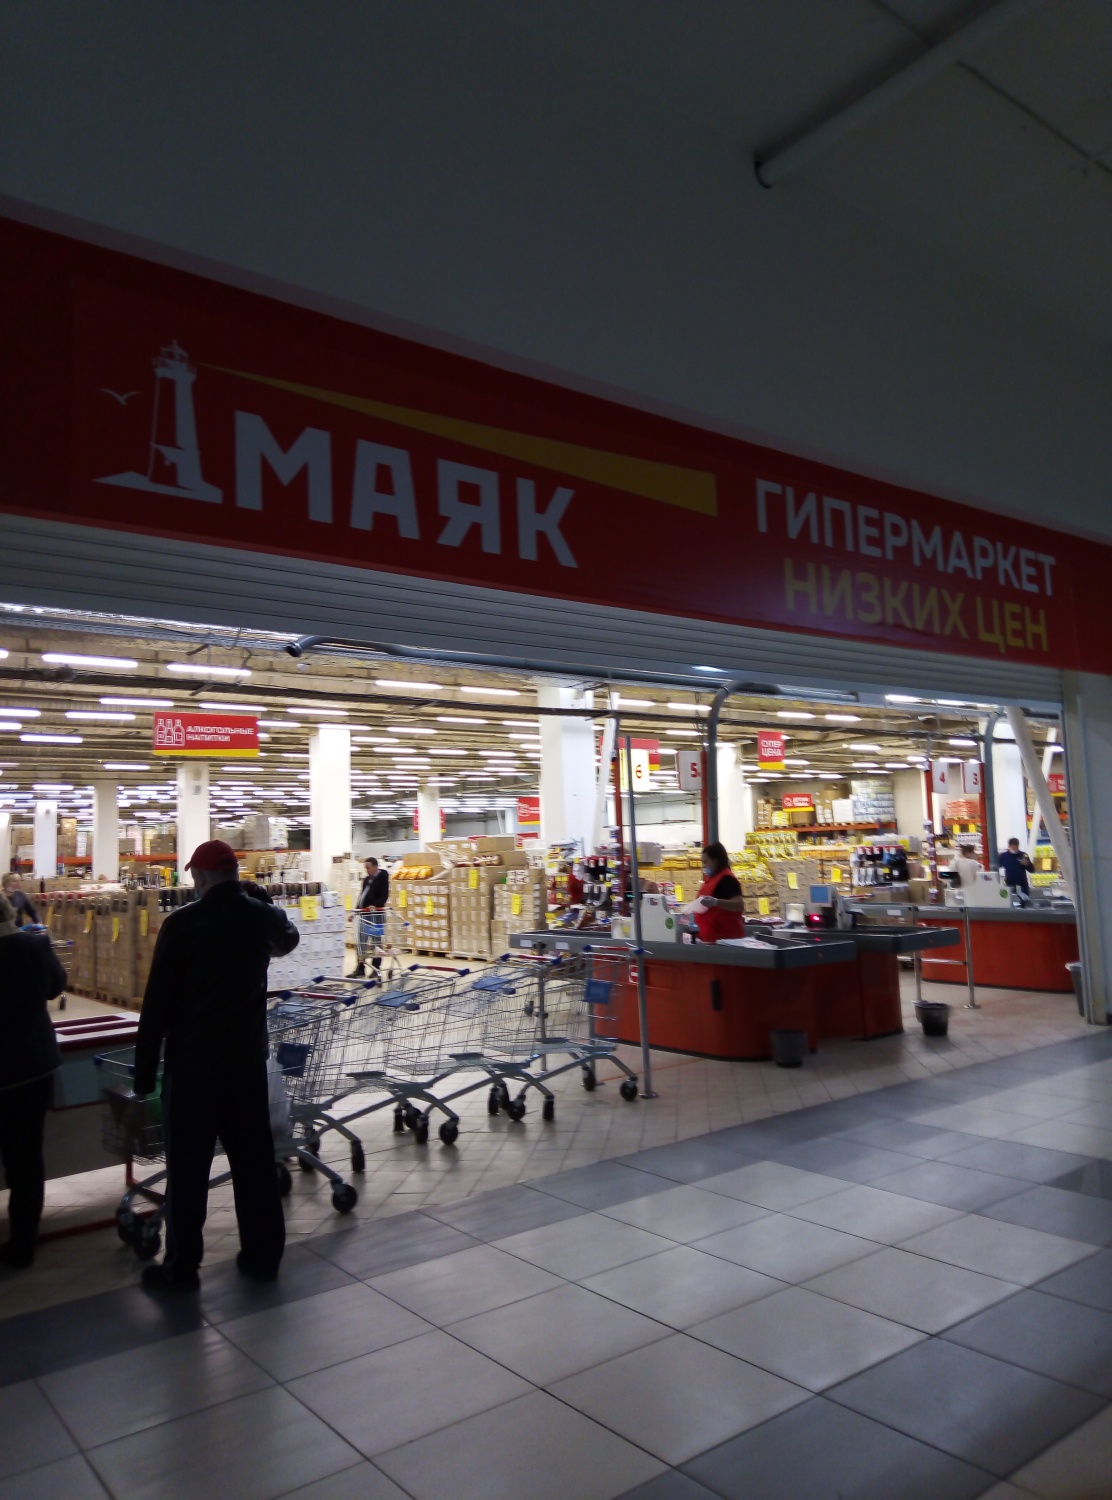 Маяк Магазин Низких Цен Самара Белорусская